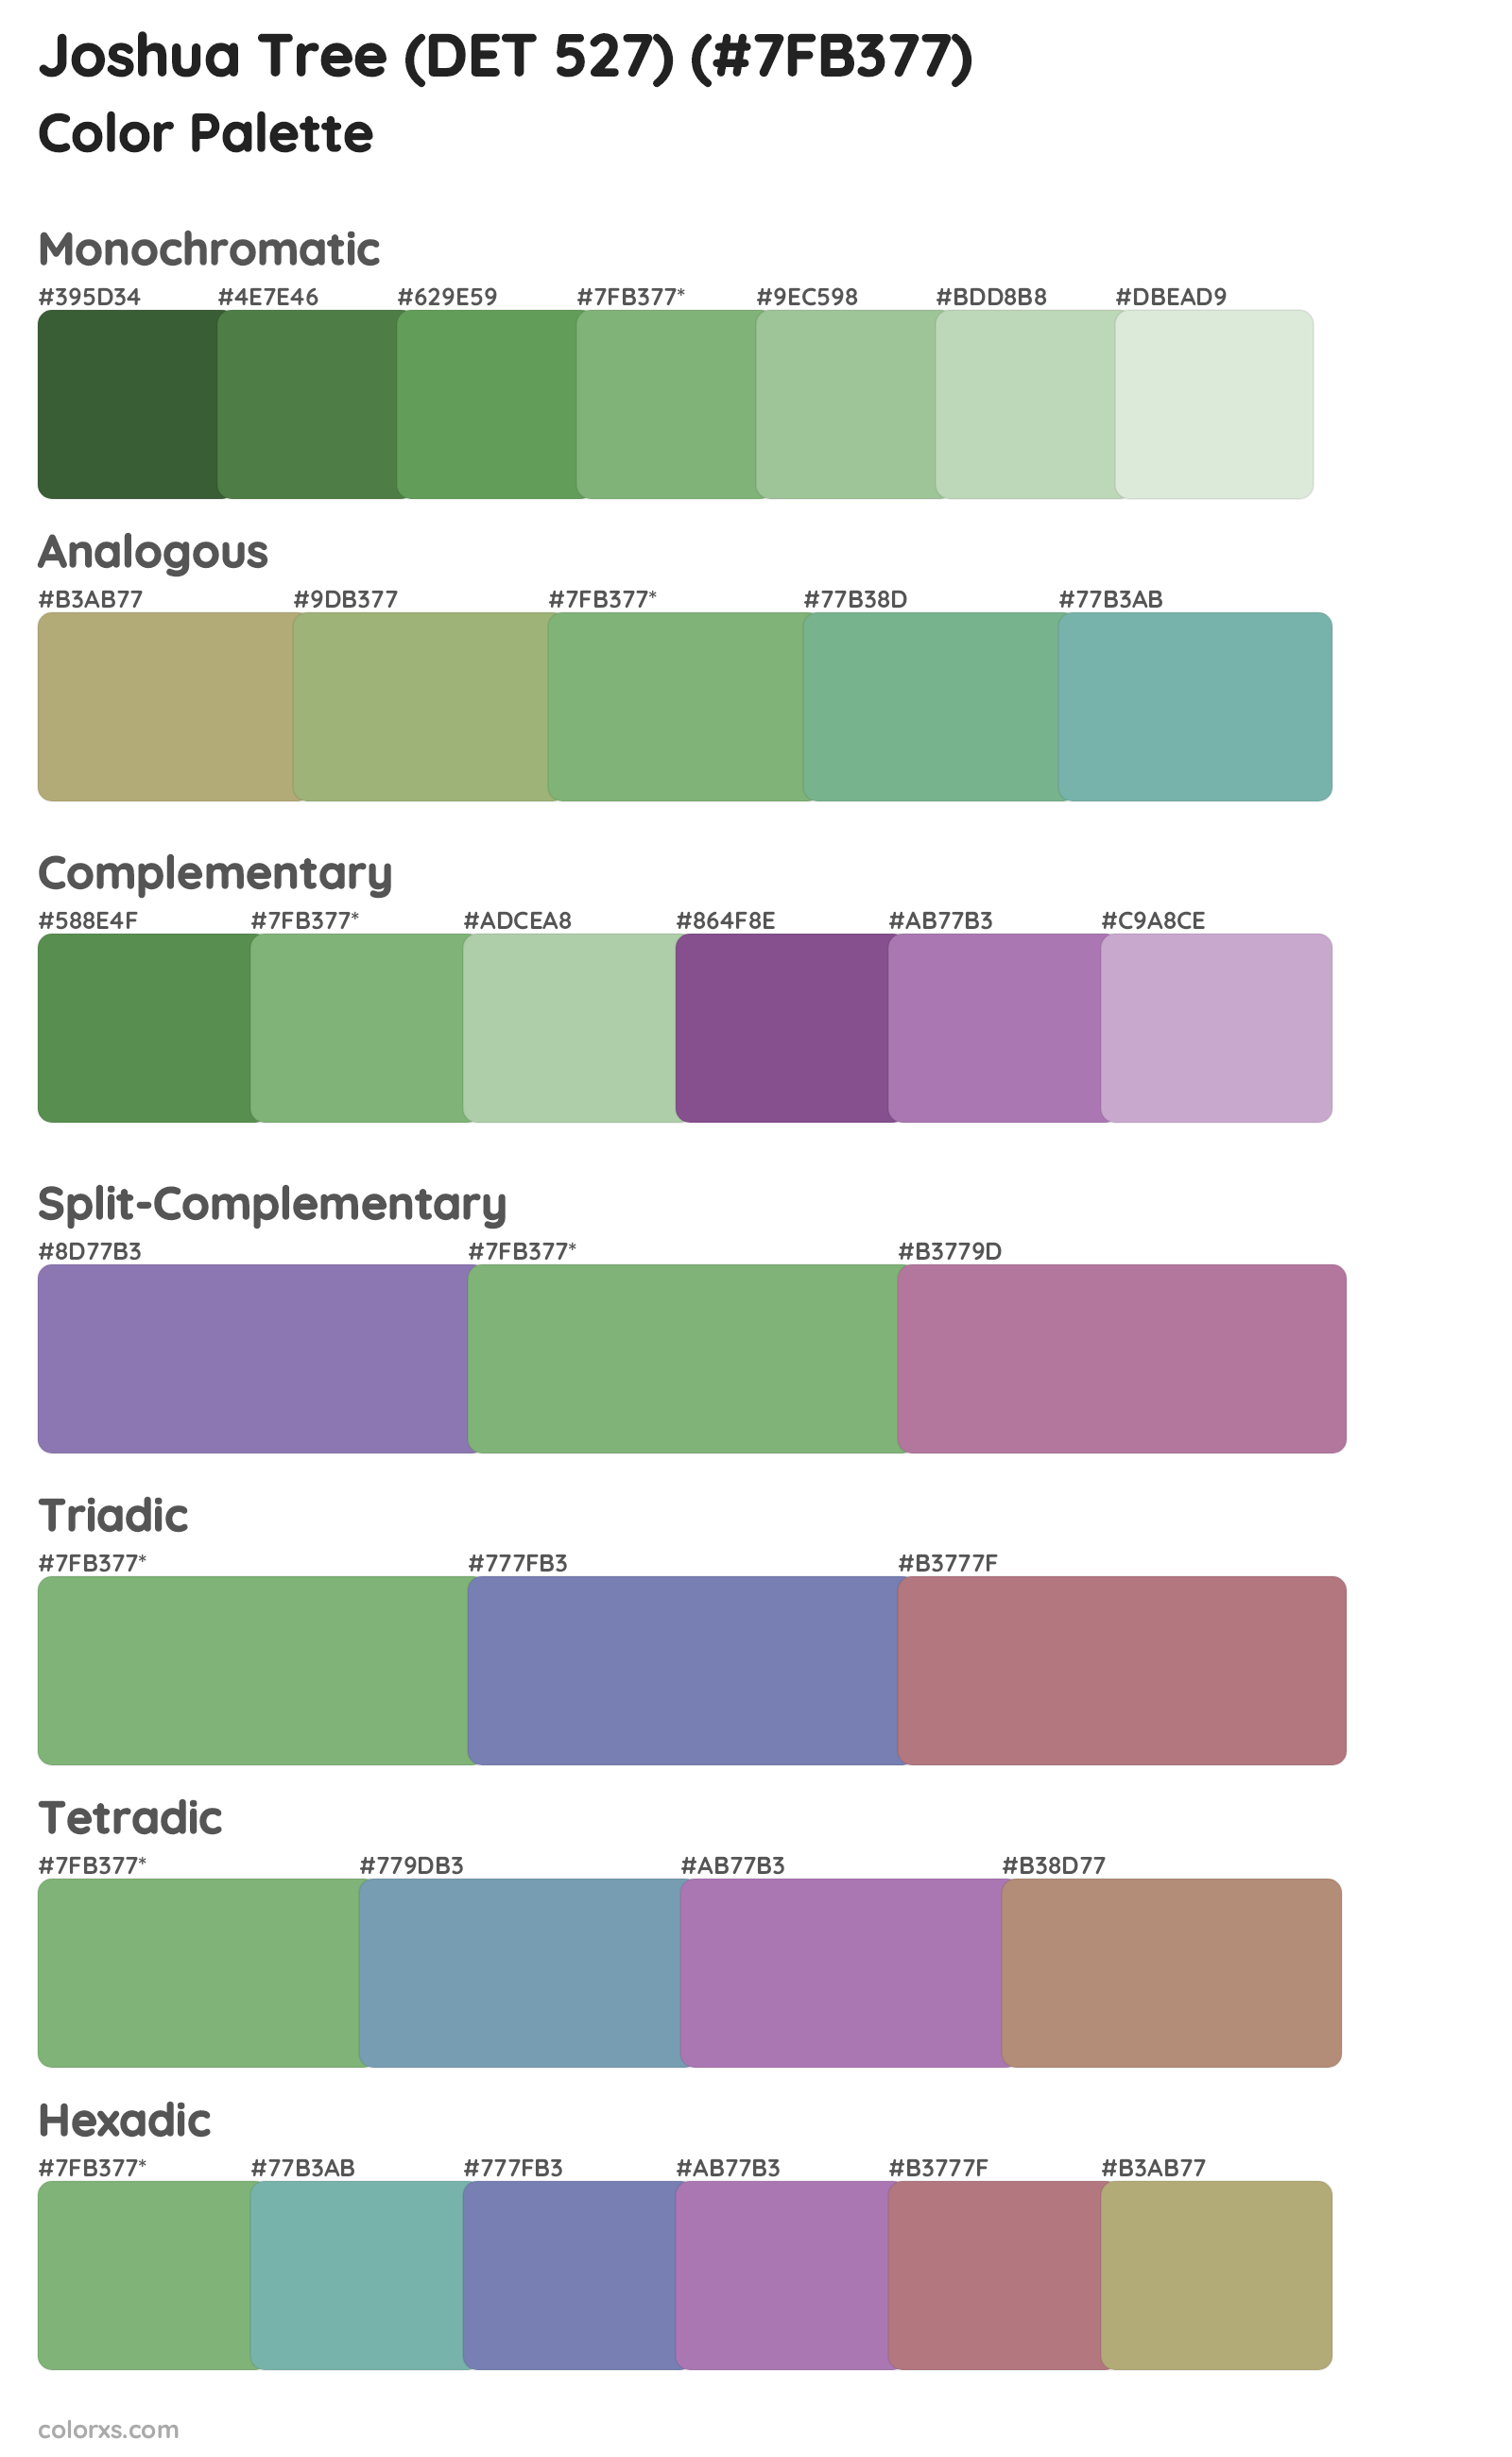 Joshua Tree (DET 527) Color Scheme Palettes